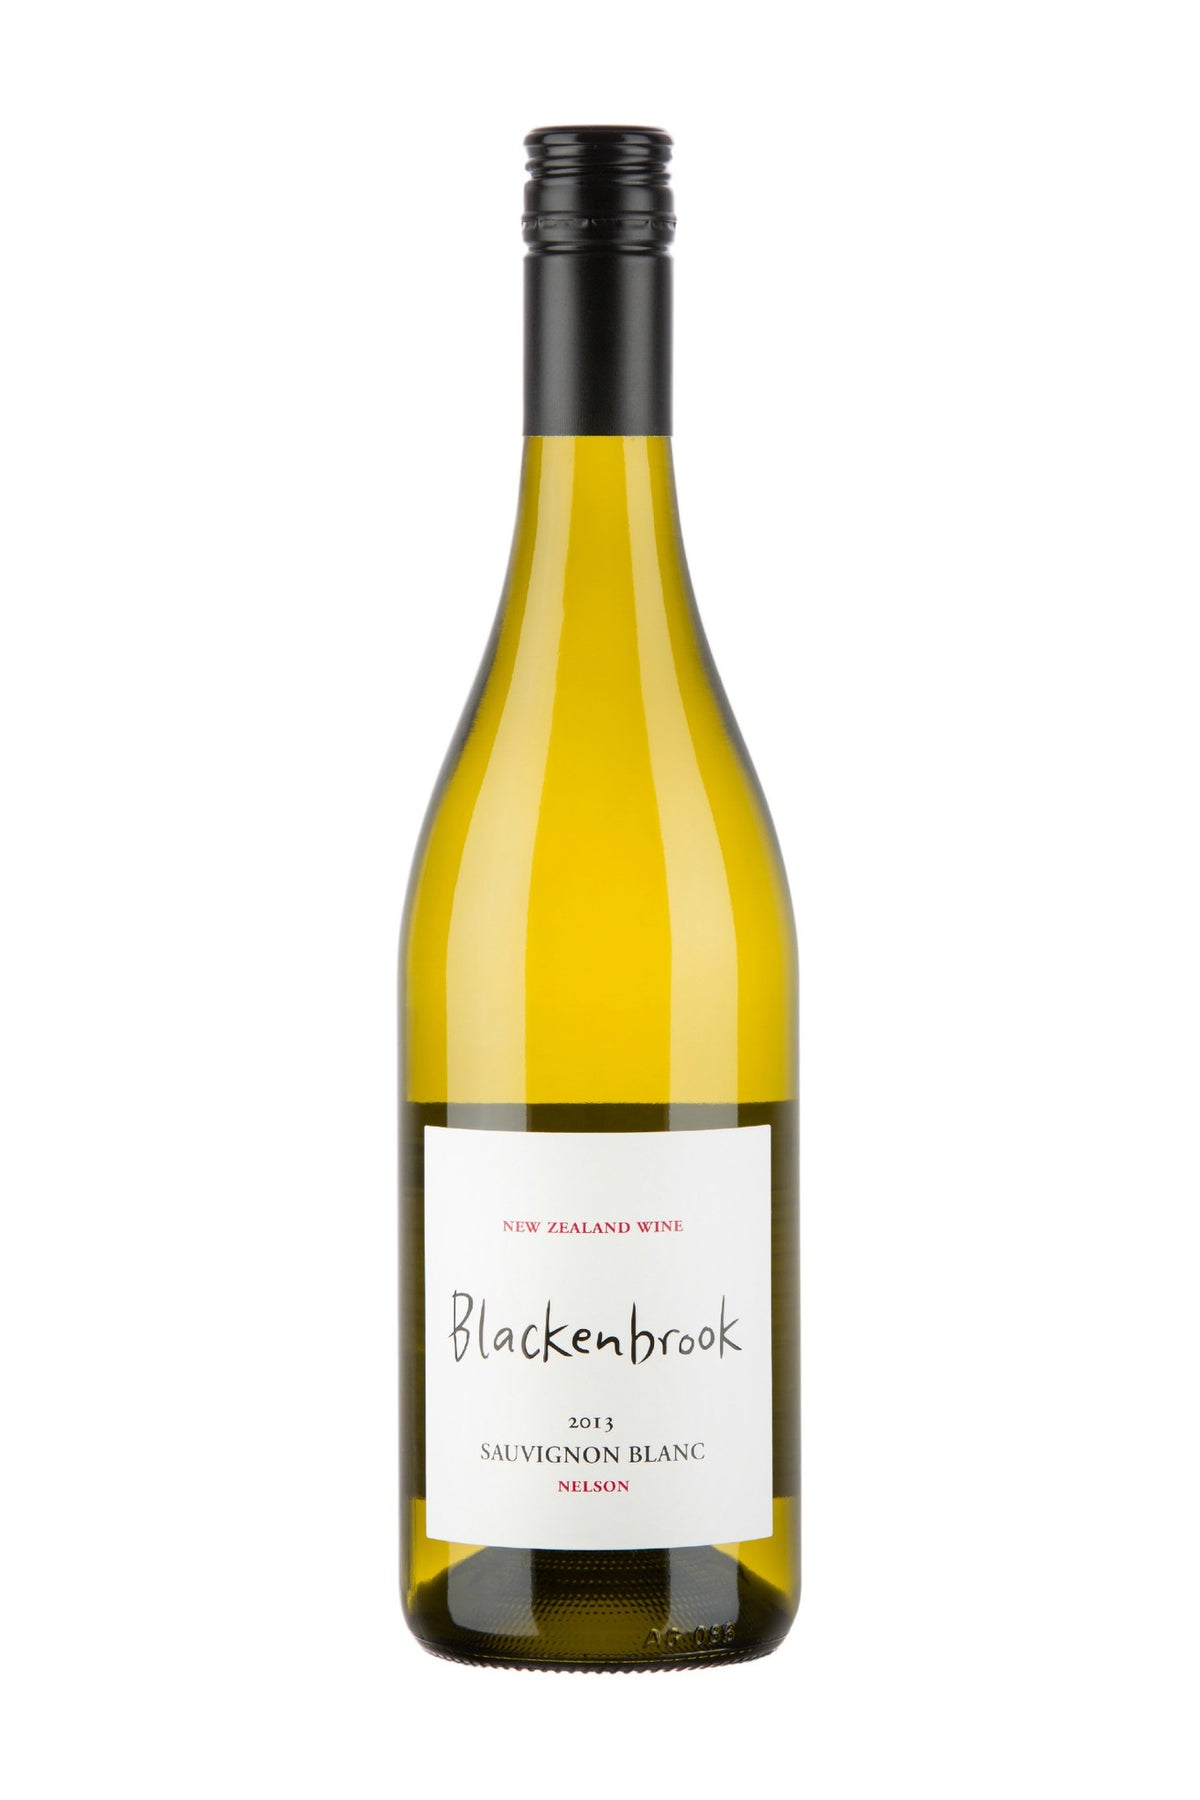 Blackenbrook Sauvignon Blanc 2013